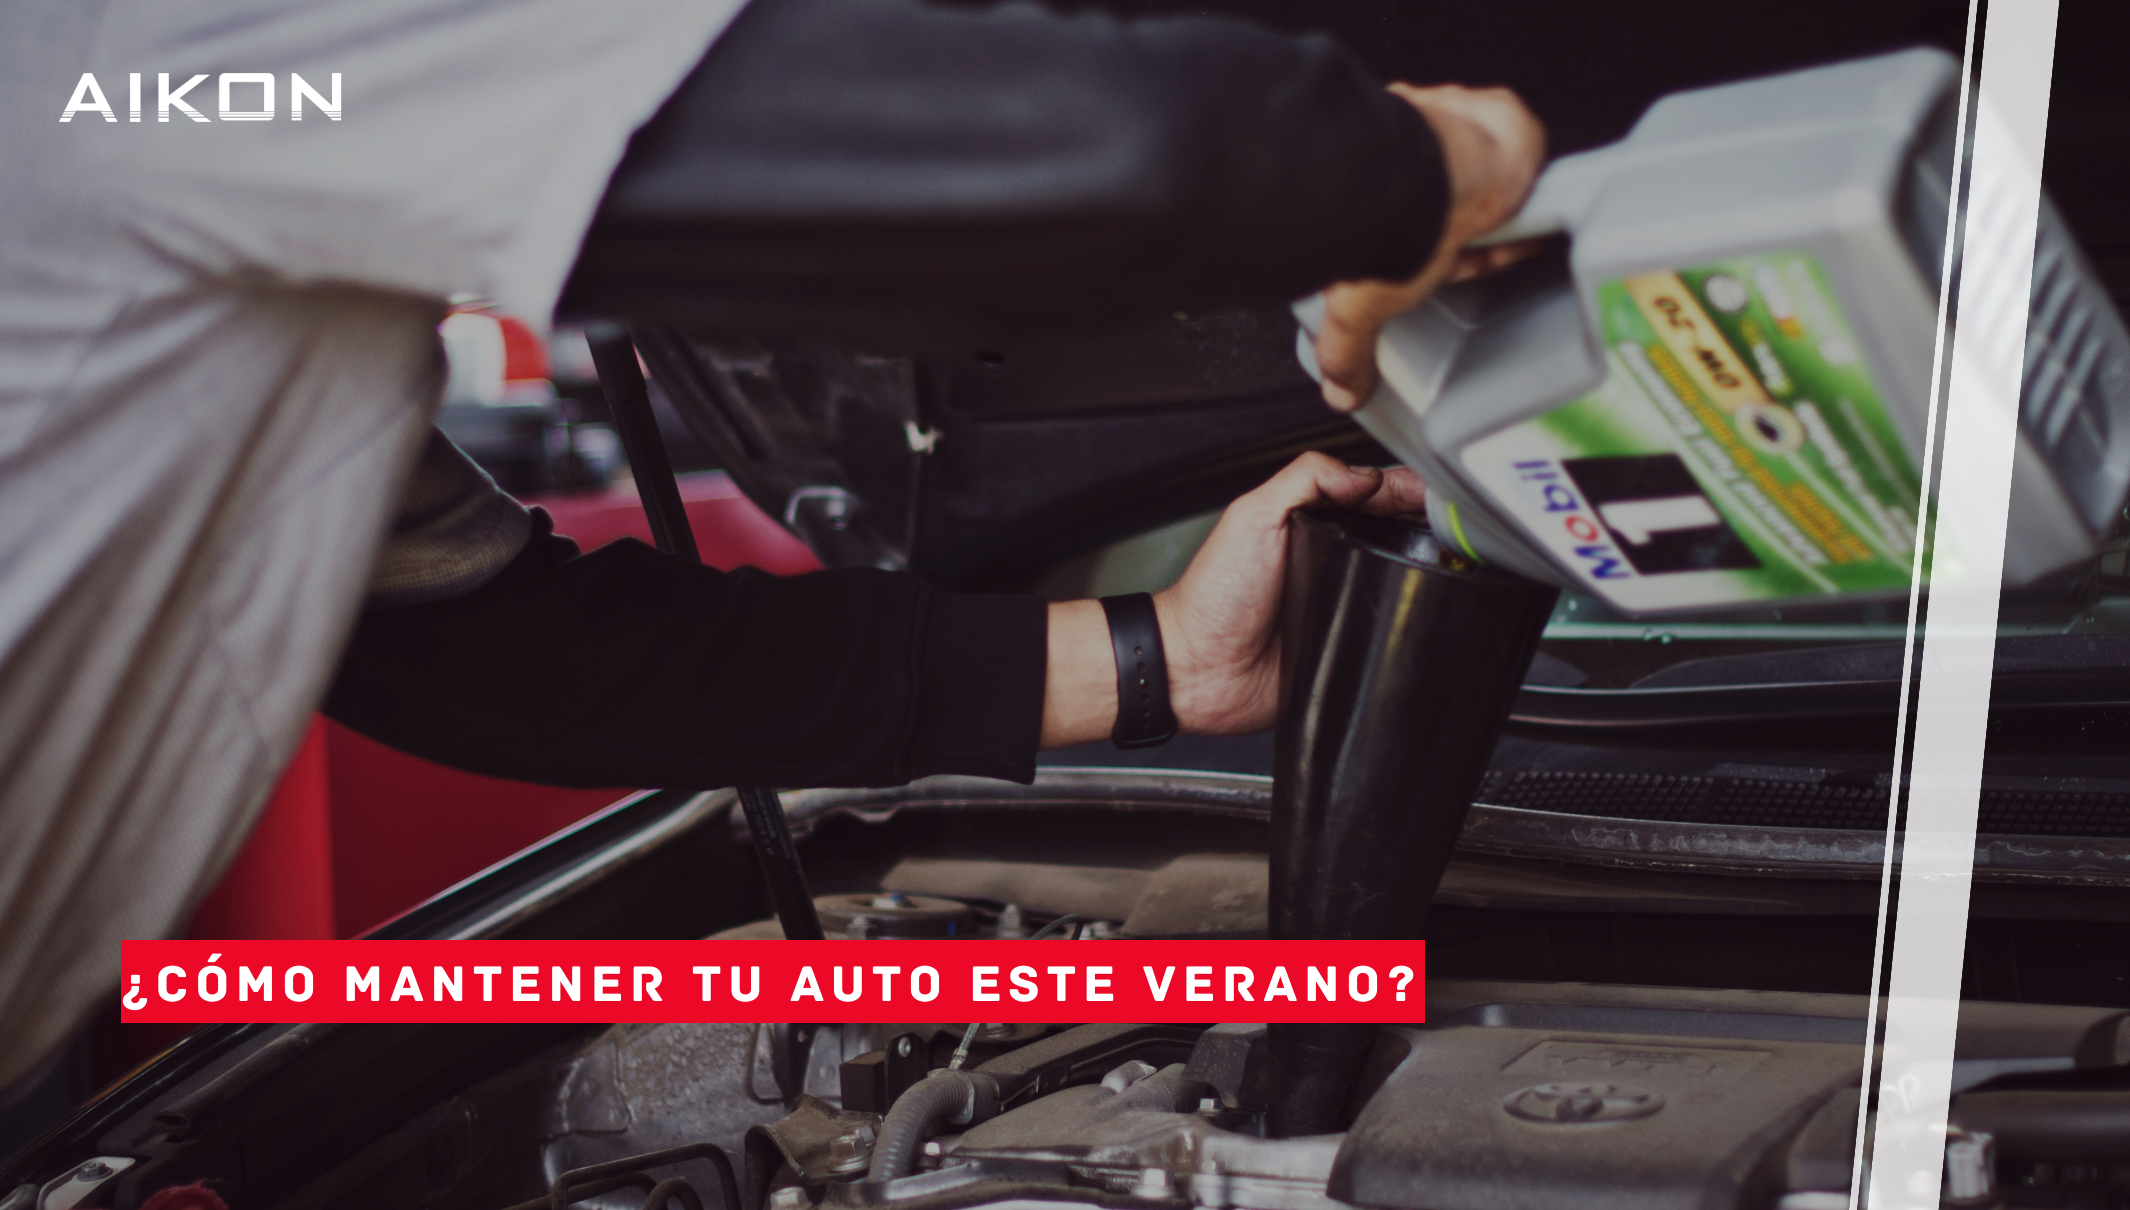 Featured image for “Mantenimiento de tu auto en verano”